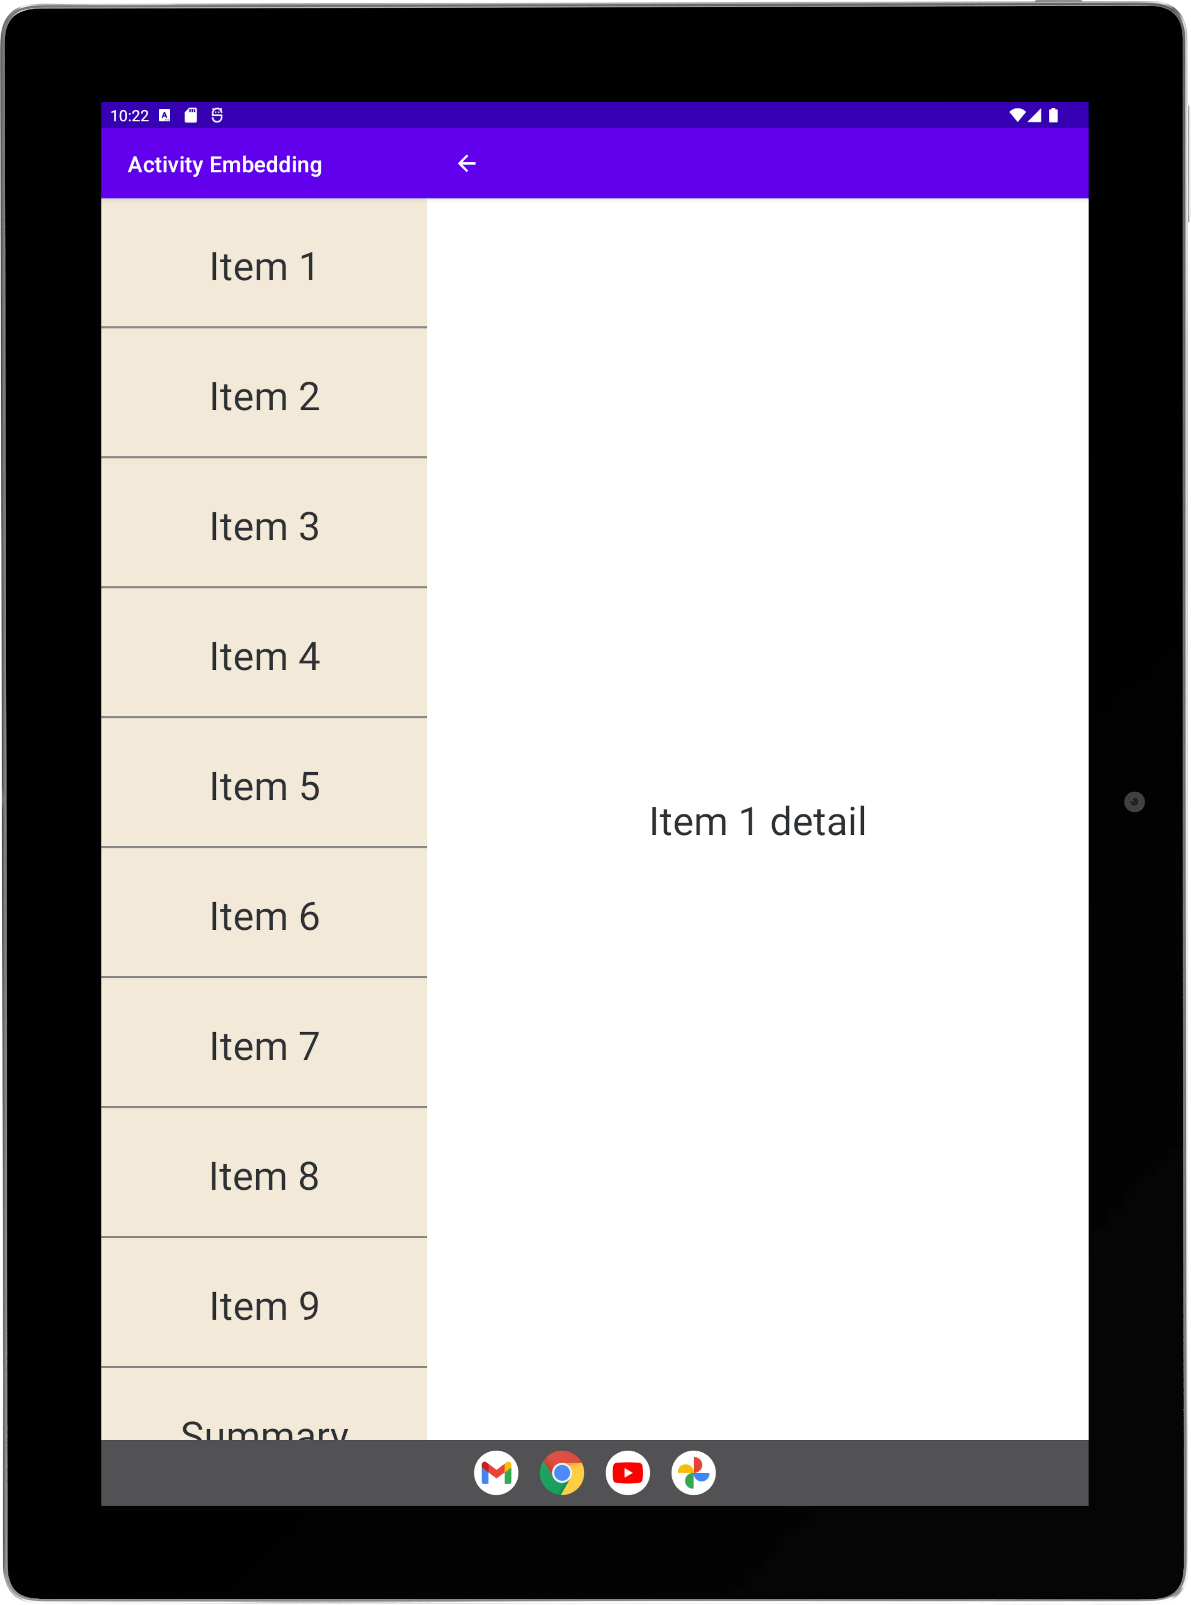 Aktivitas daftar dan detail berdampingan dalam orientasi potret di tablet besar.